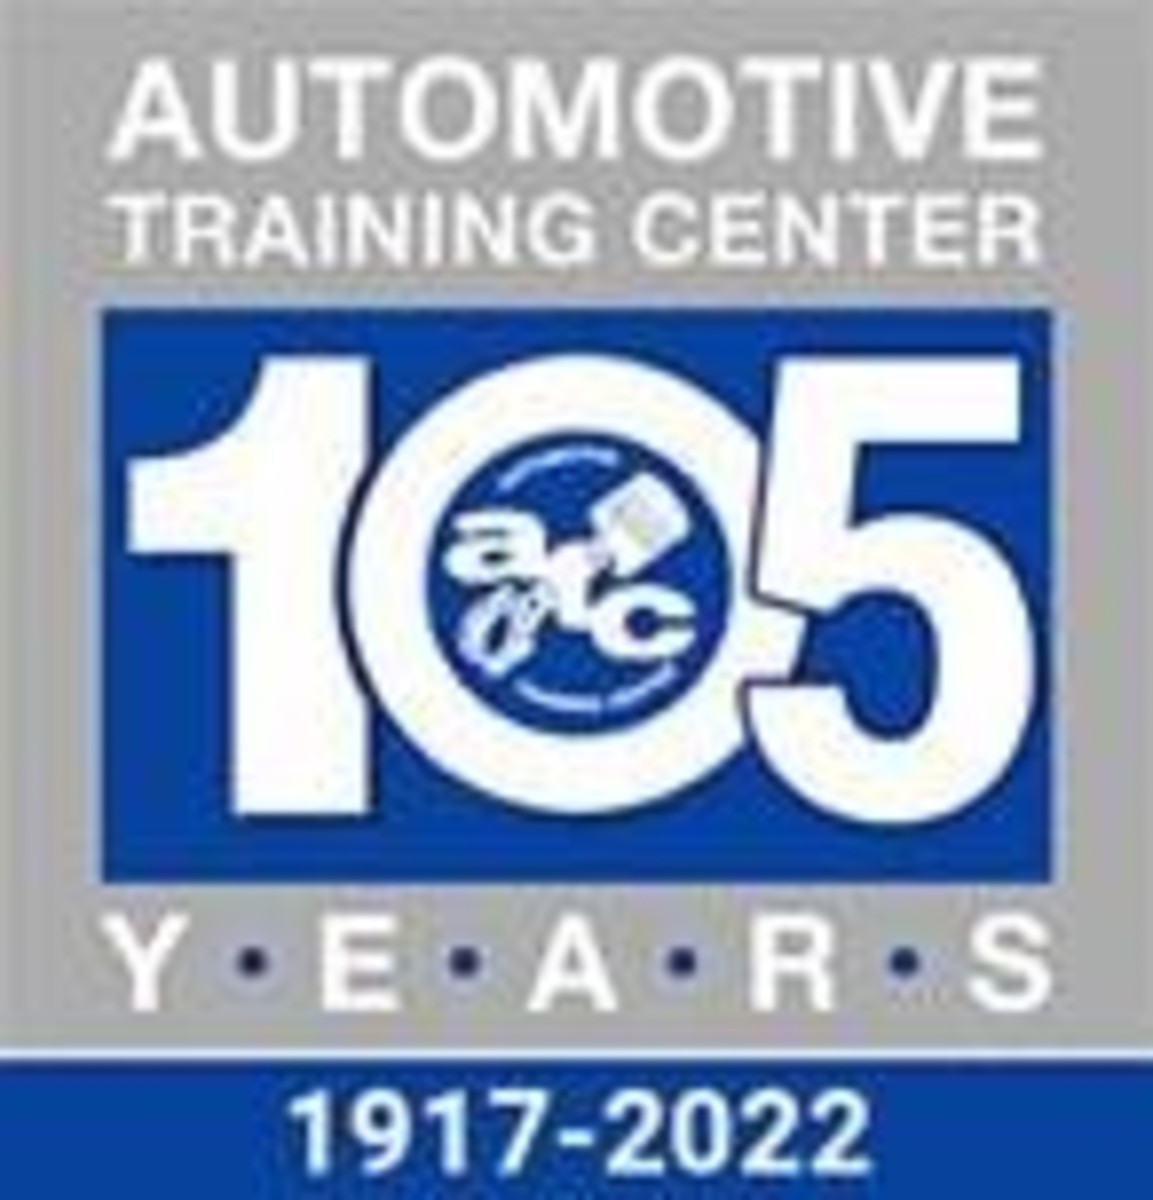 Automotive training